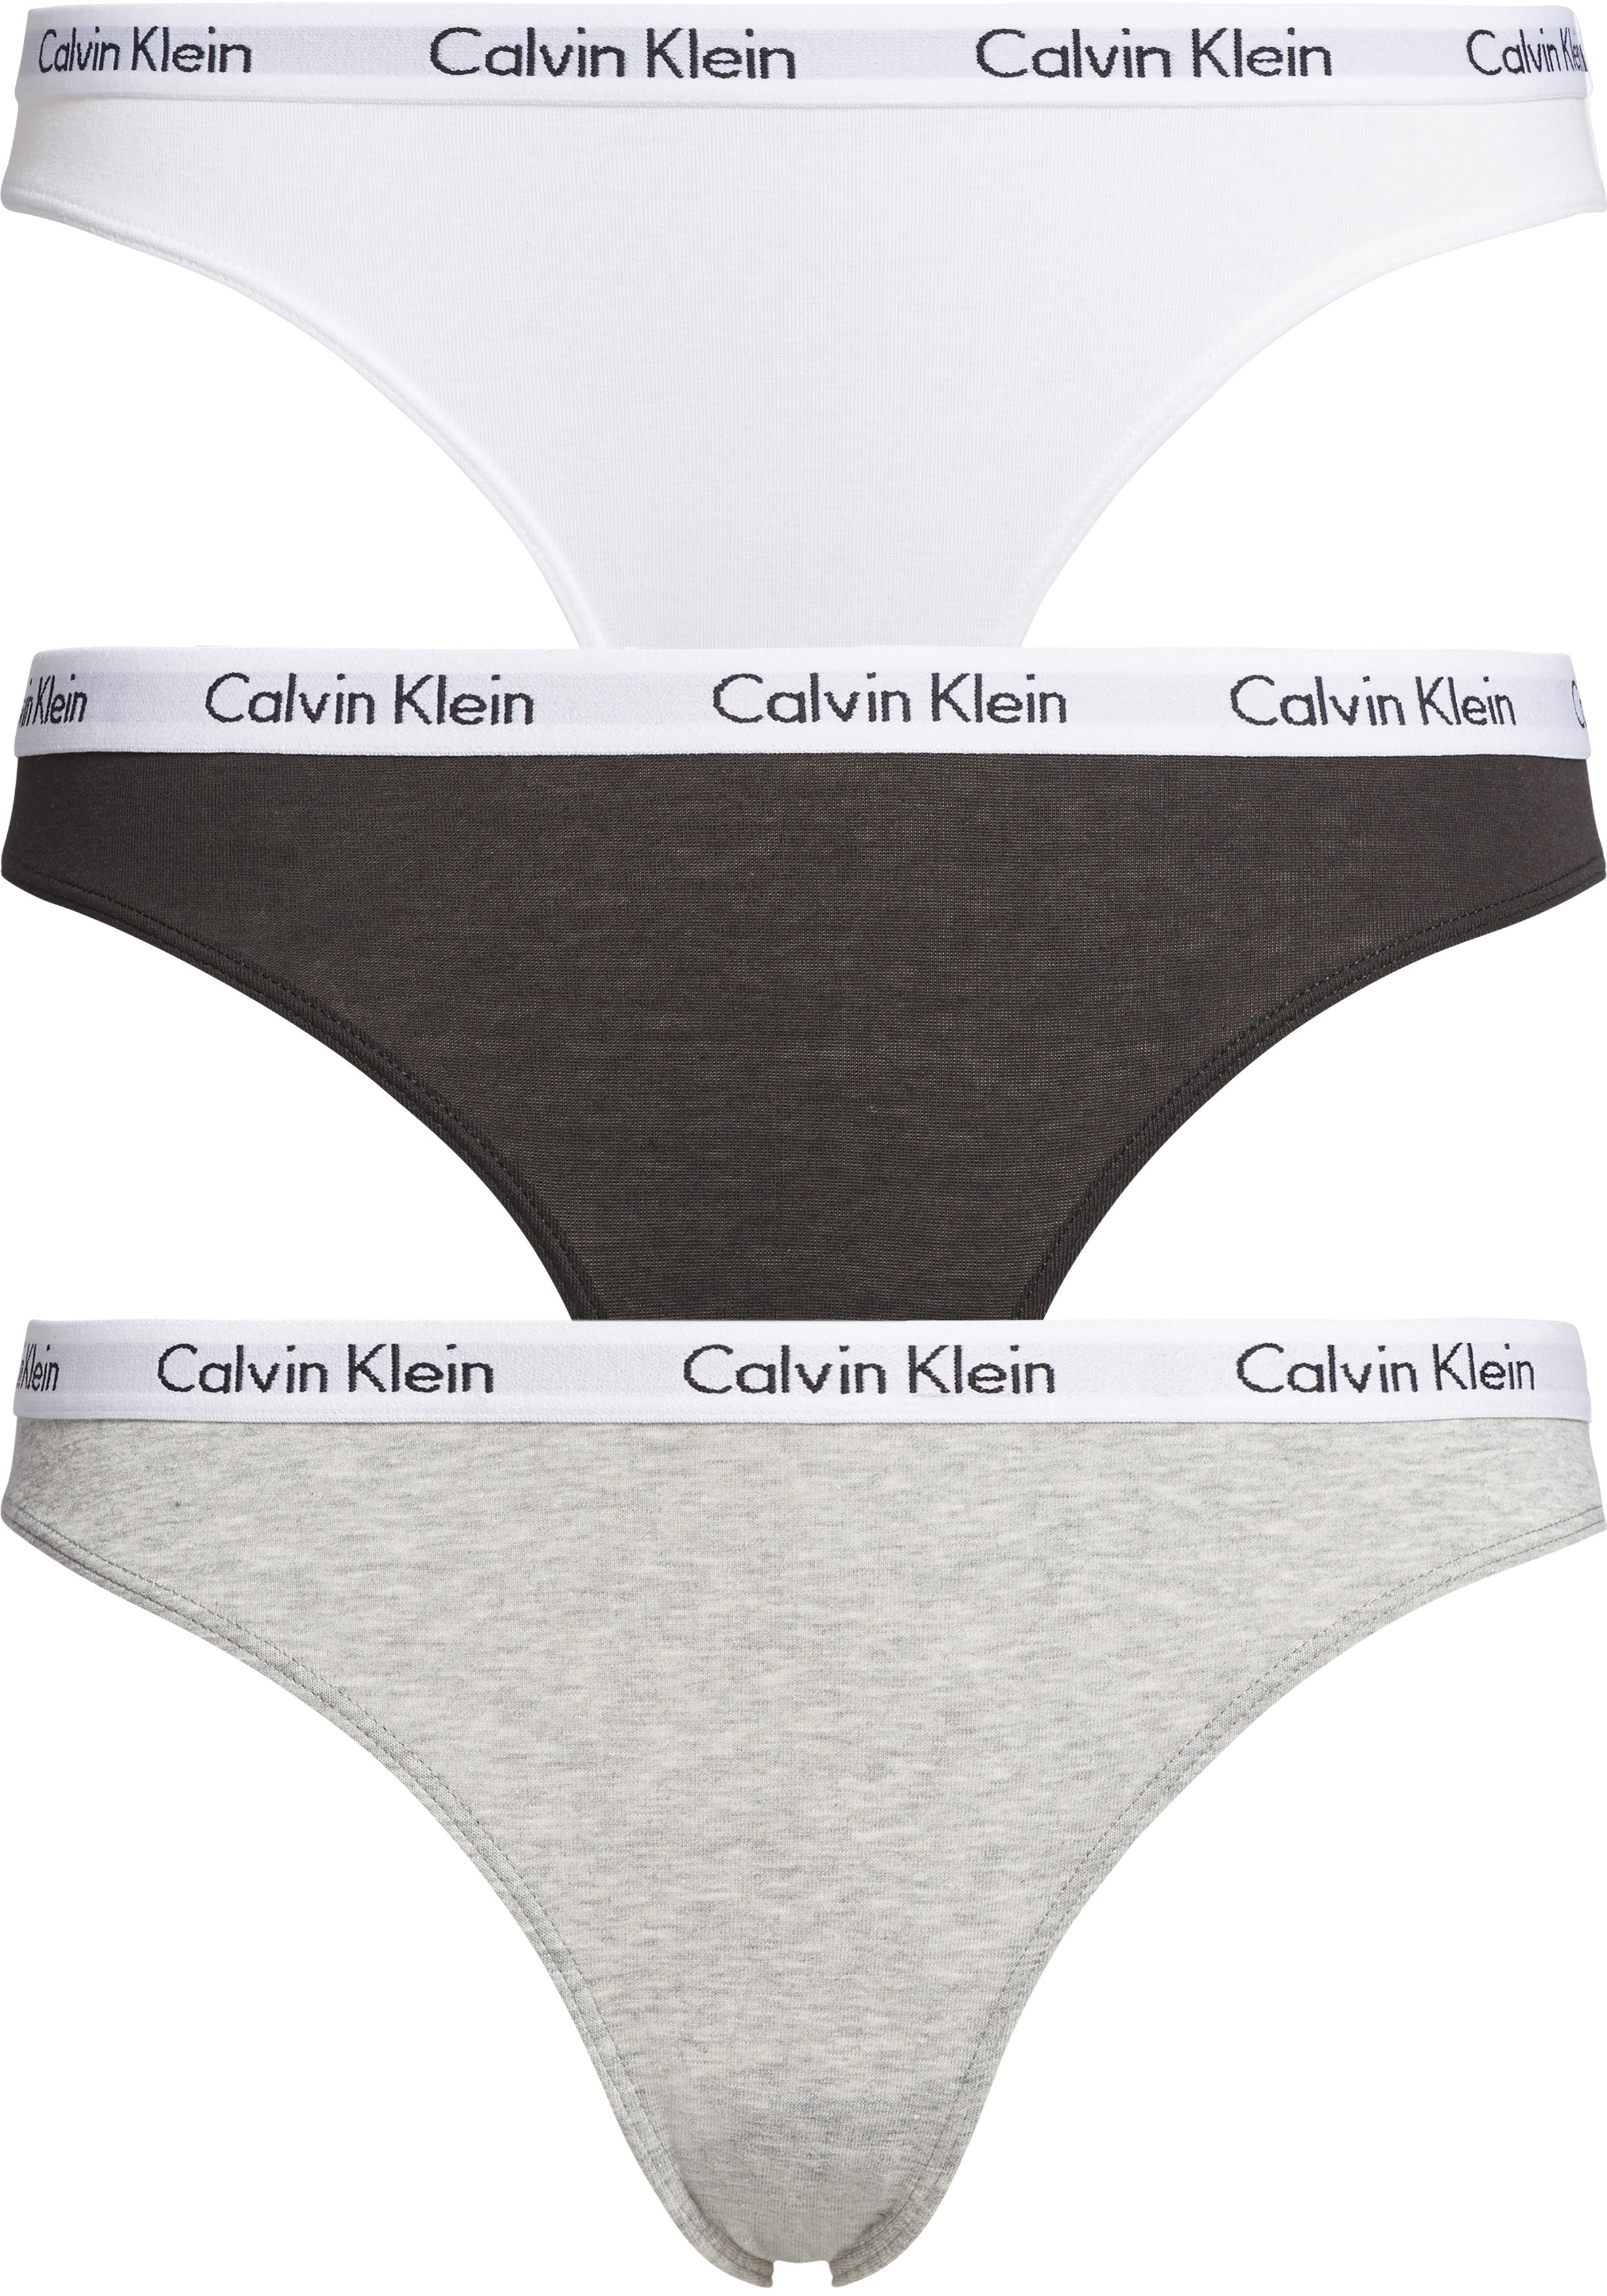 dynastie juni hulp Calvin Klein dames slips (3-pack), zwart, wit en grijs - Zomer SALE tot 50%  korting